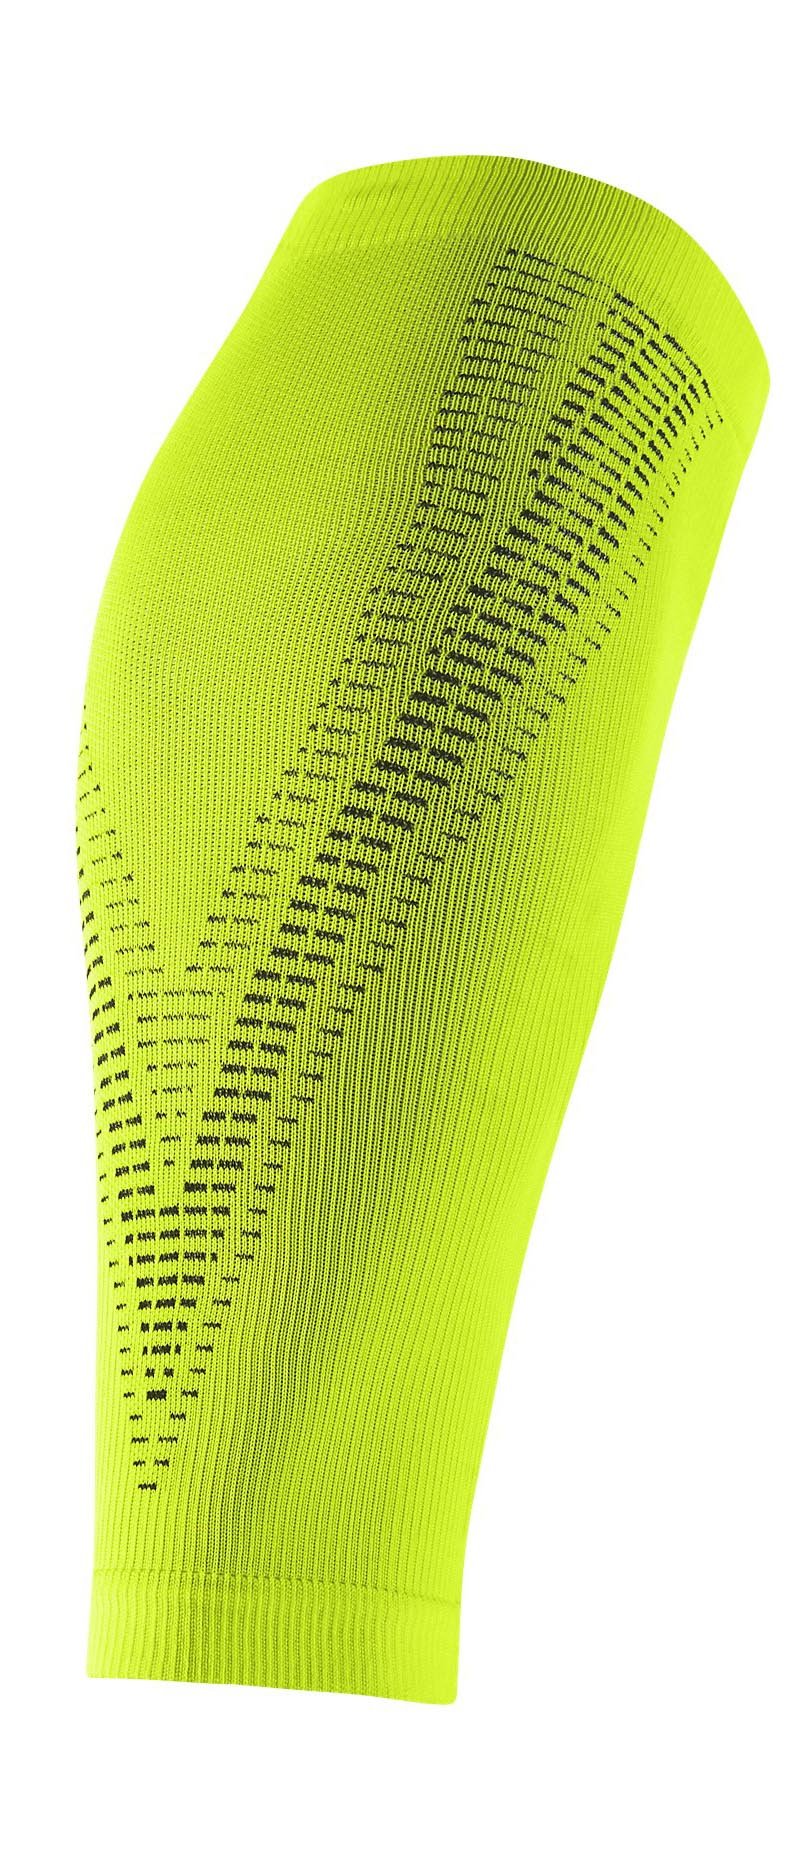 Běžecké návleky na lýtka Nike Elite Compression